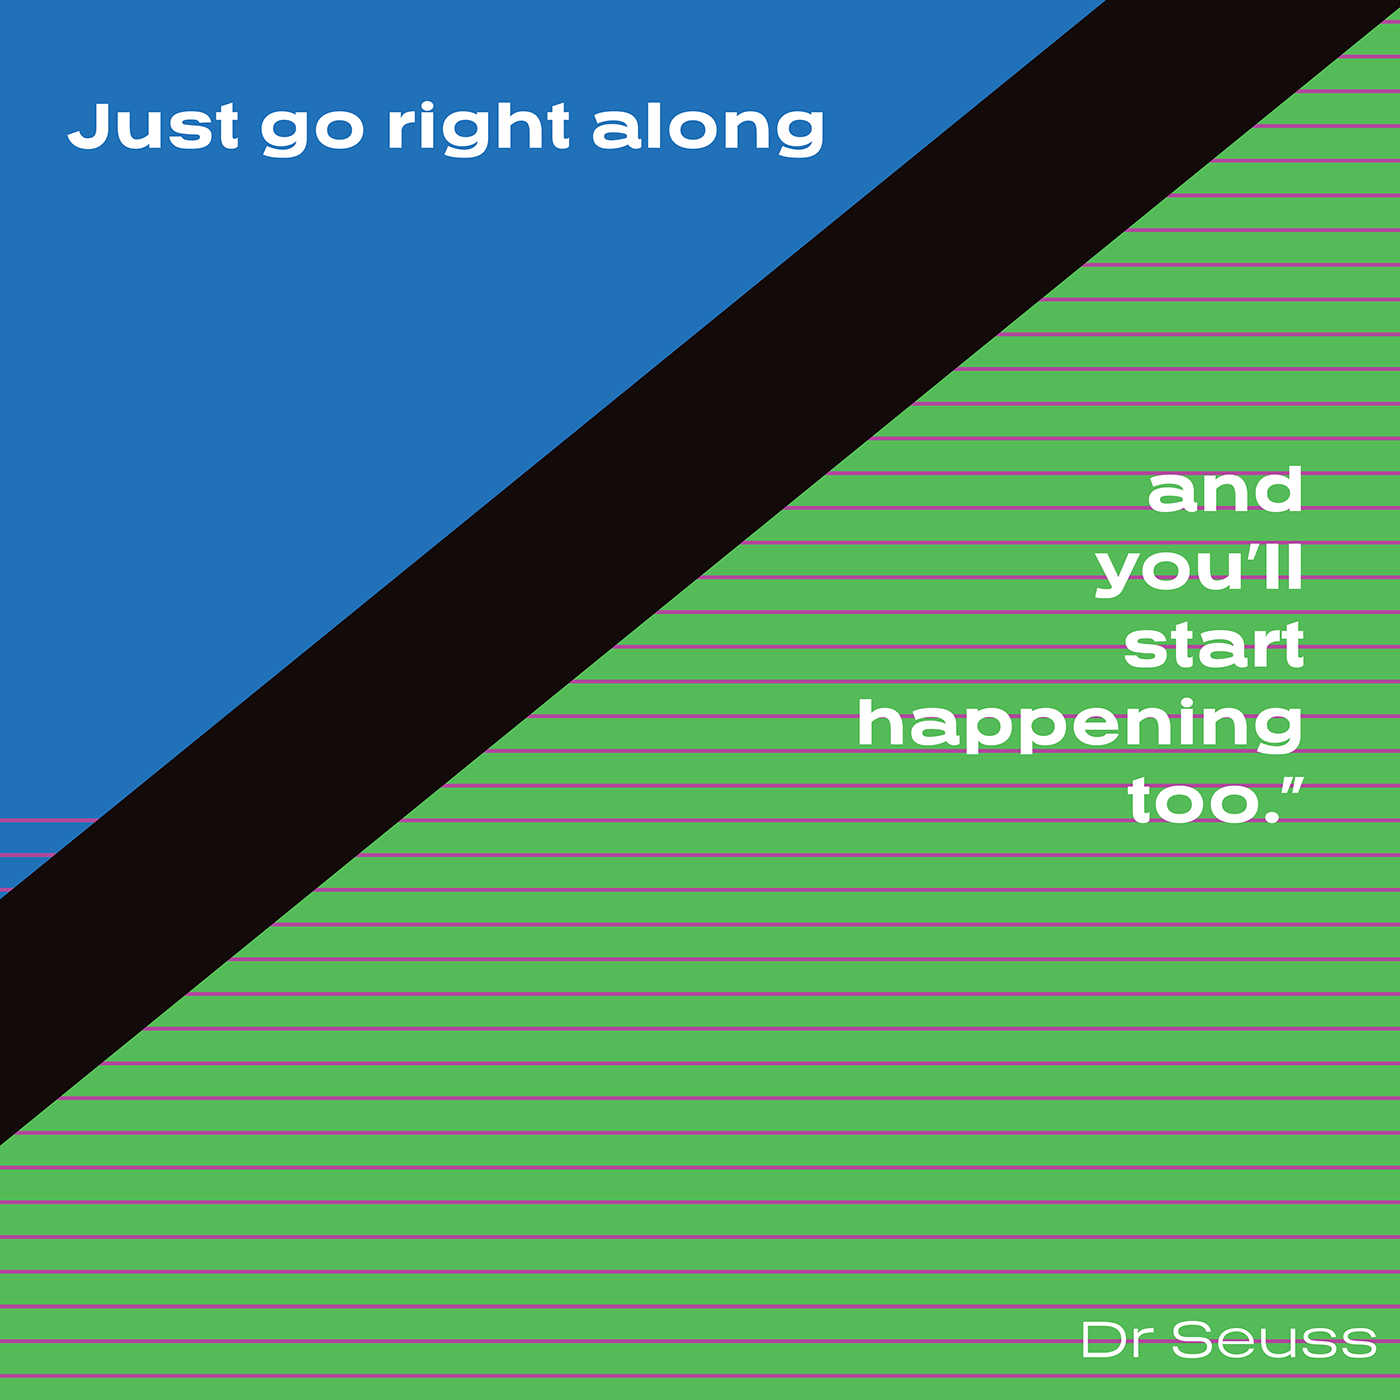 Dr Seuss improvement inspiration motivation Quotes Self-Improvement